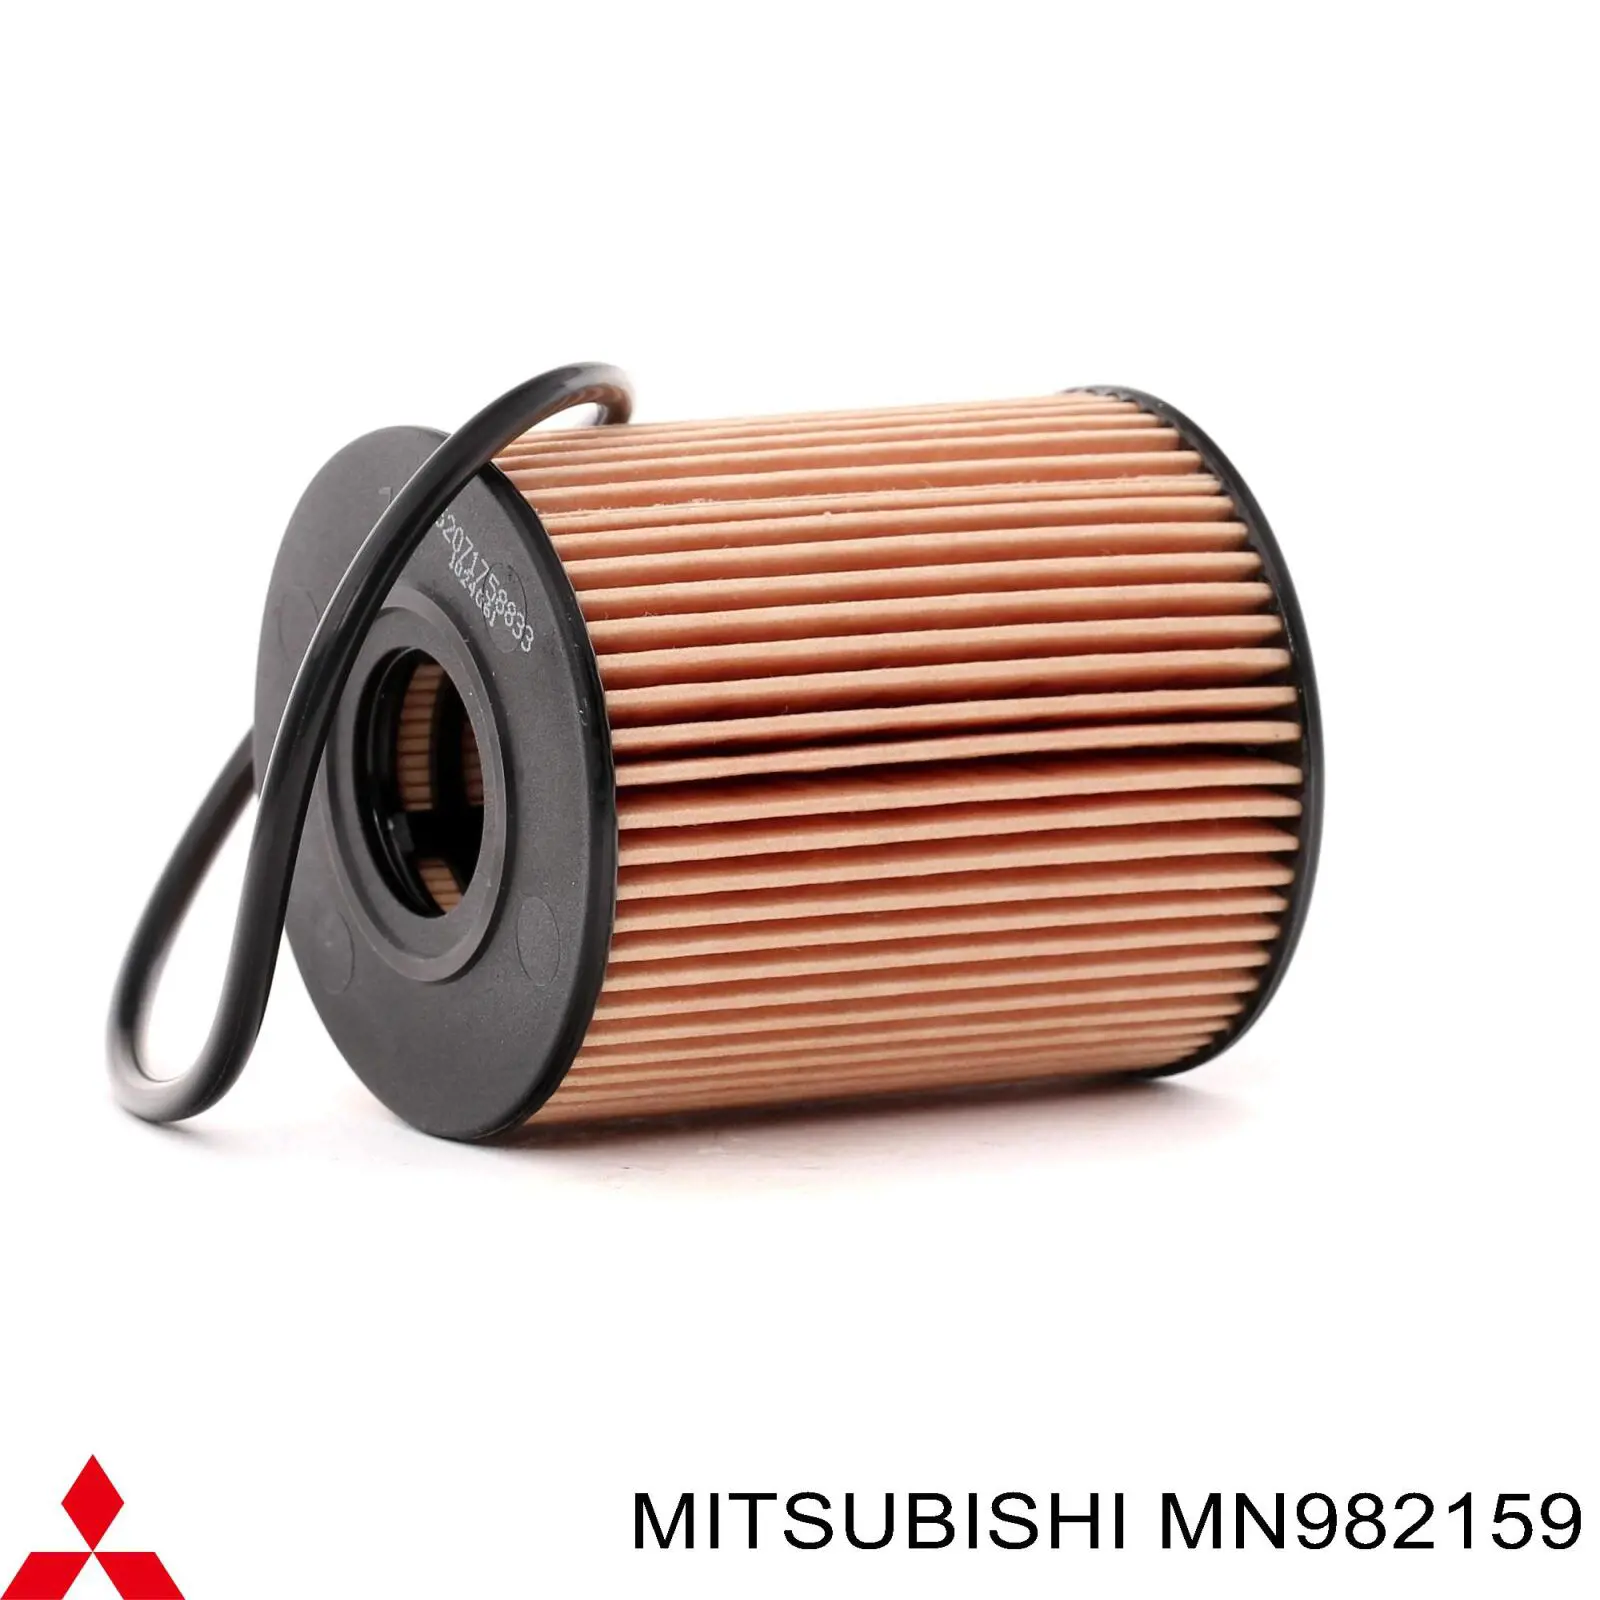 MN982159 Mitsubishi filtro de aceite